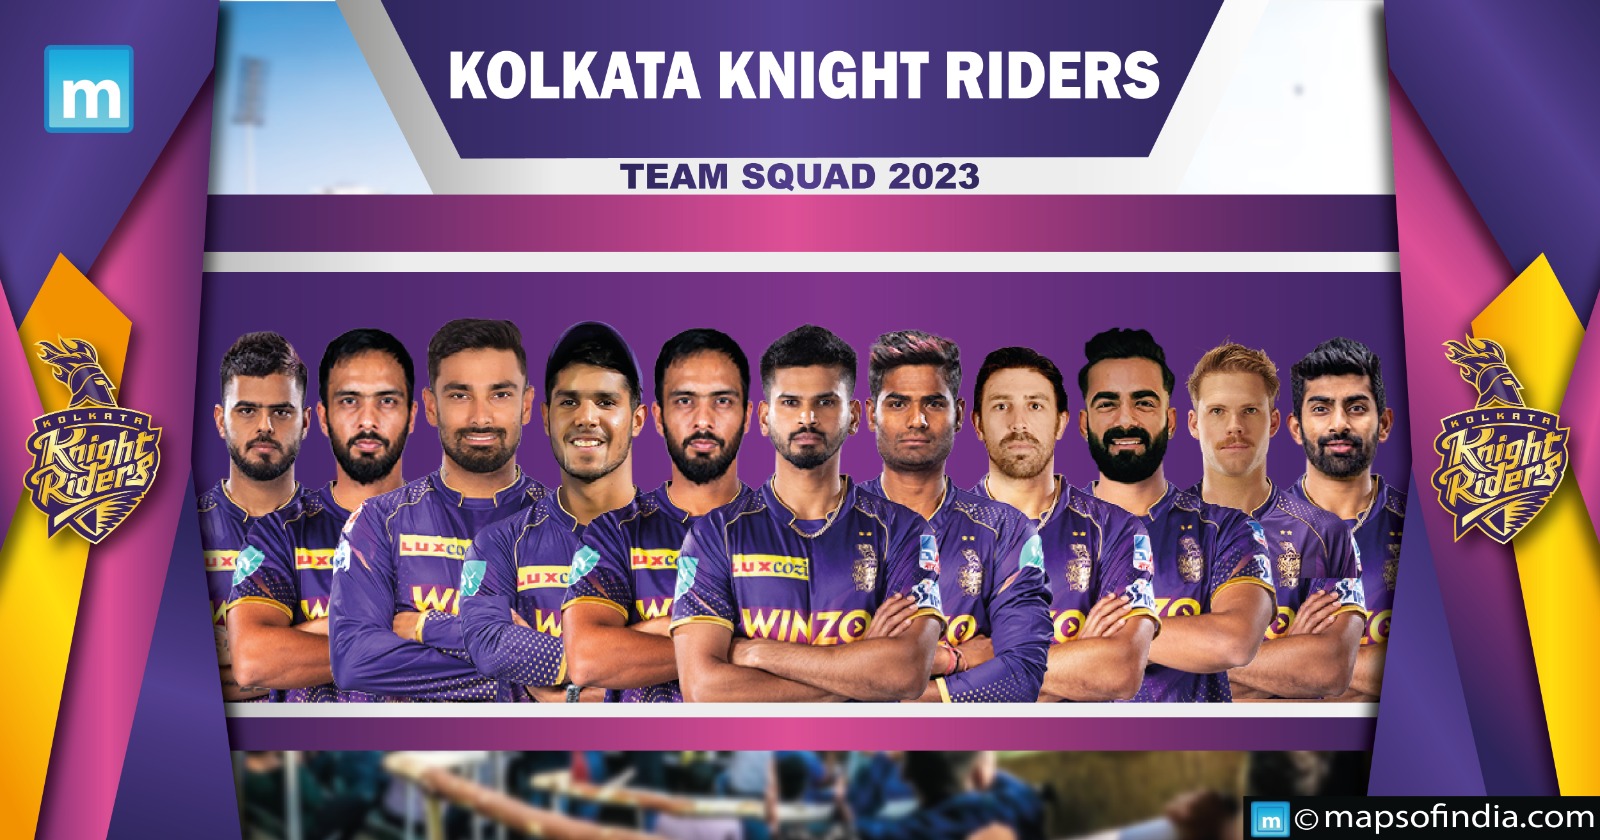 Kolkata Knight Riders squad 2020